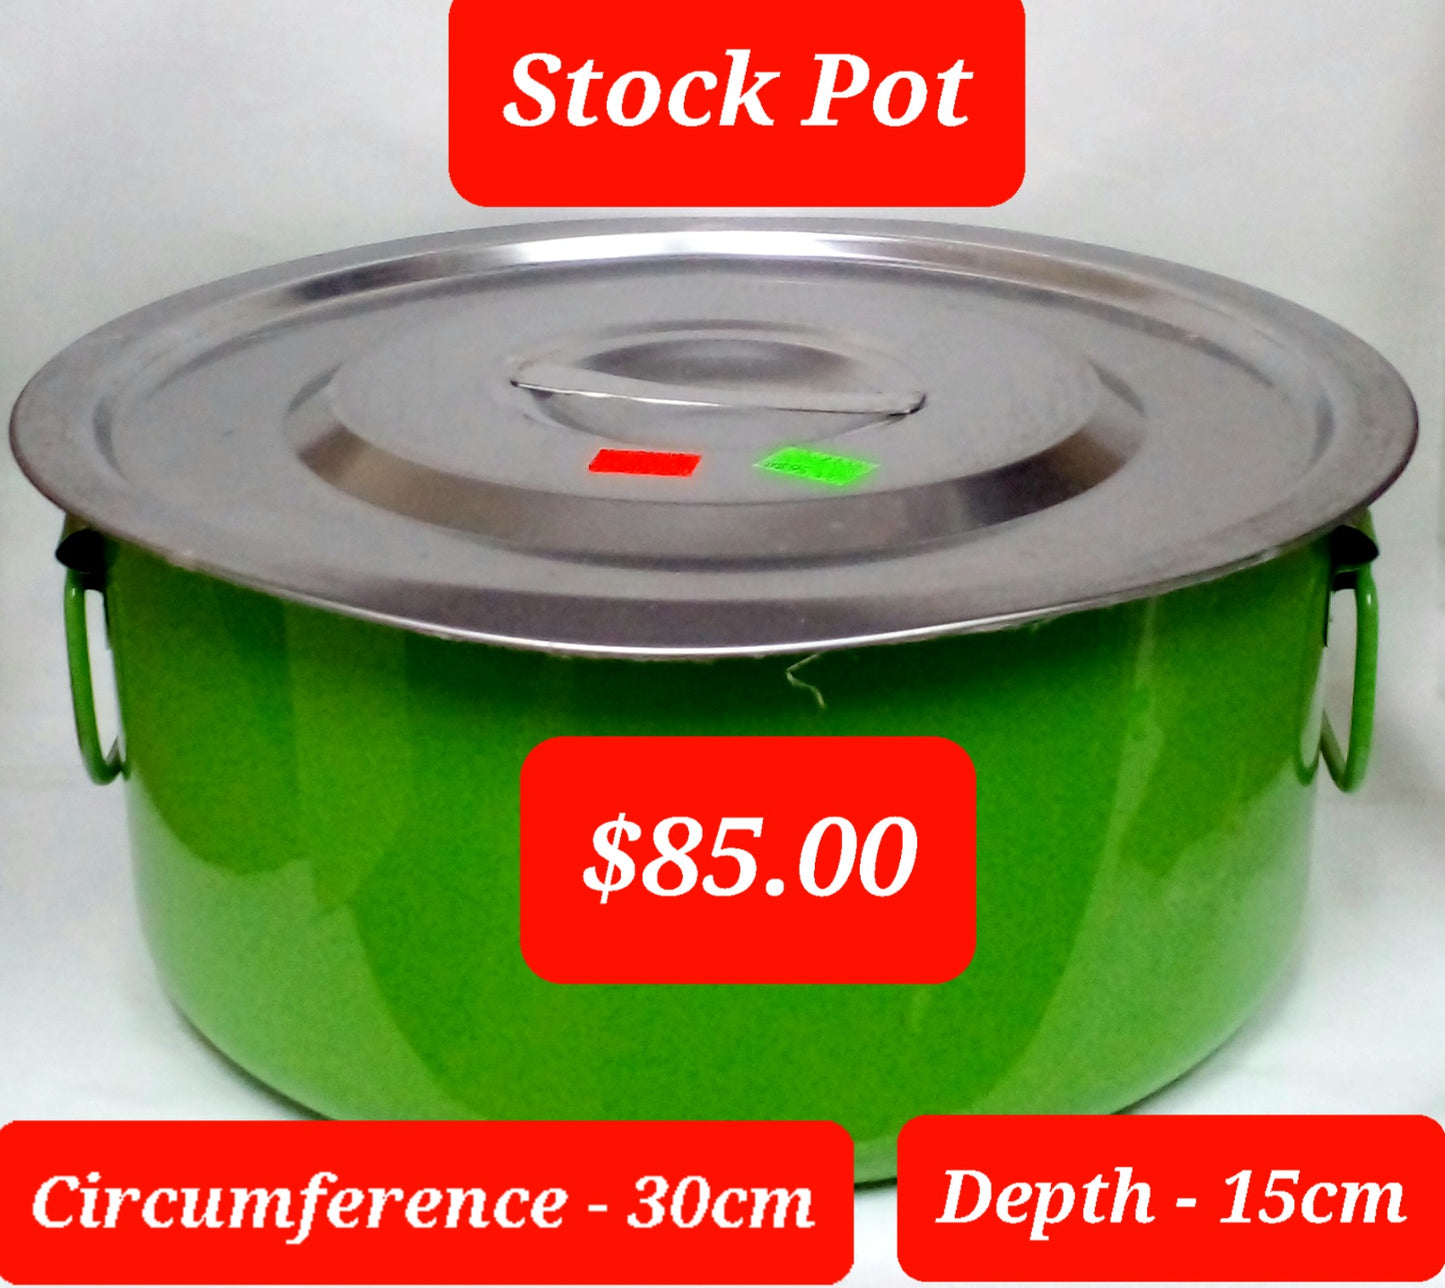 Stock pot